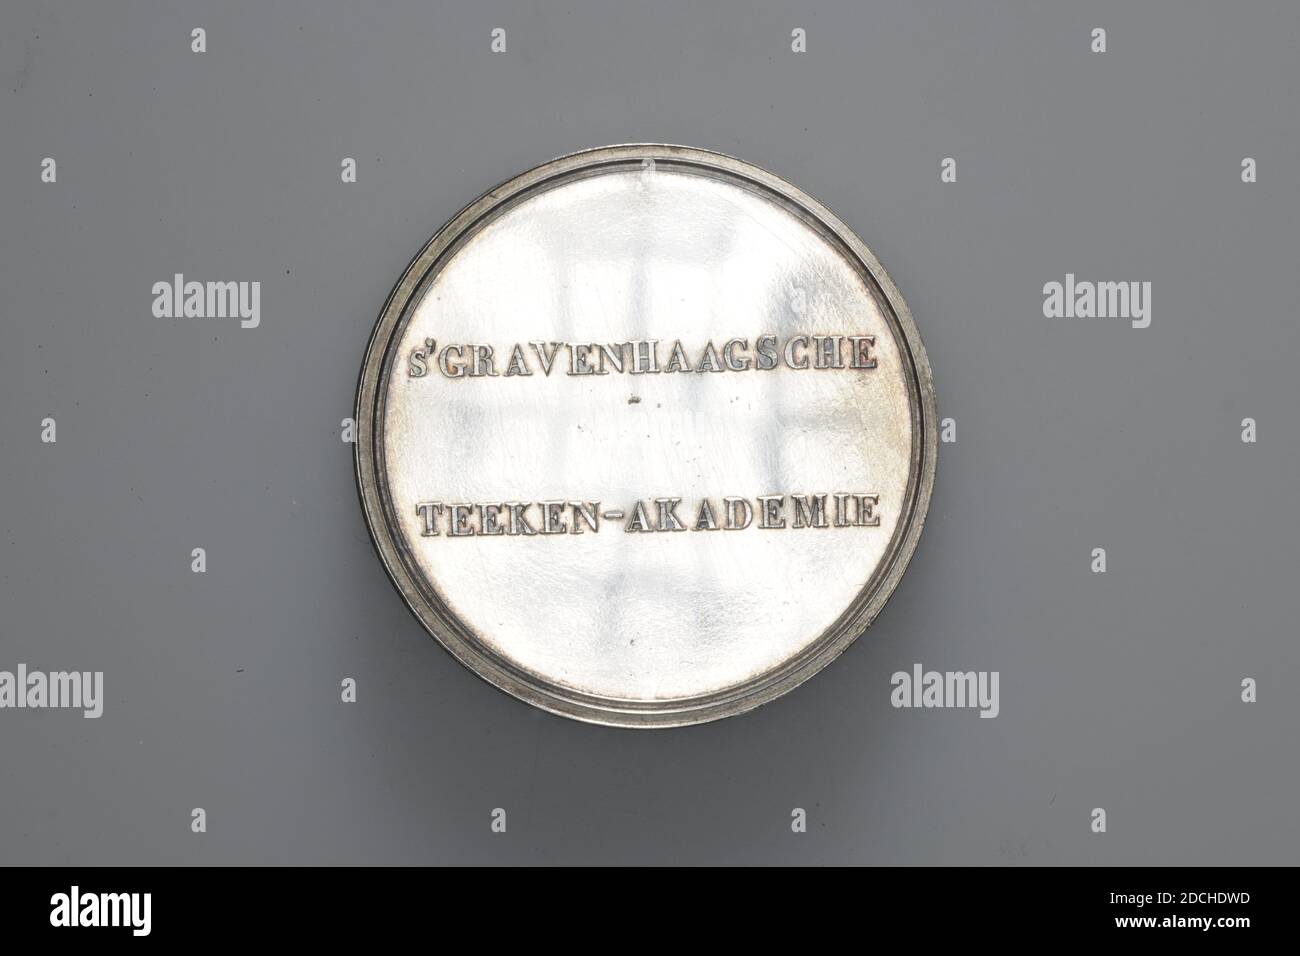 Médaille du prix, Anonyme, 1845, général: 4.2 x 0.3cm (42 x 3mm), poids: 30g, médaille d'argent, frappée par l'Académie de dessin la Haye pour A.H. Bakker-Korff, 1845. À l'avant se trouve l'inscription S 'GRAVENHAAGSCHE TEEKEN-AKADEMIE. Au dos, à l'intérieur d'une couronne de Laurier, avec un noeud au bas au milieu, se trouve l'inscription gravée de A.H. Bakker-Korff Class Anatomie 1844-1845. La médaille a un bord de frilled, 1940 Banque D'Images